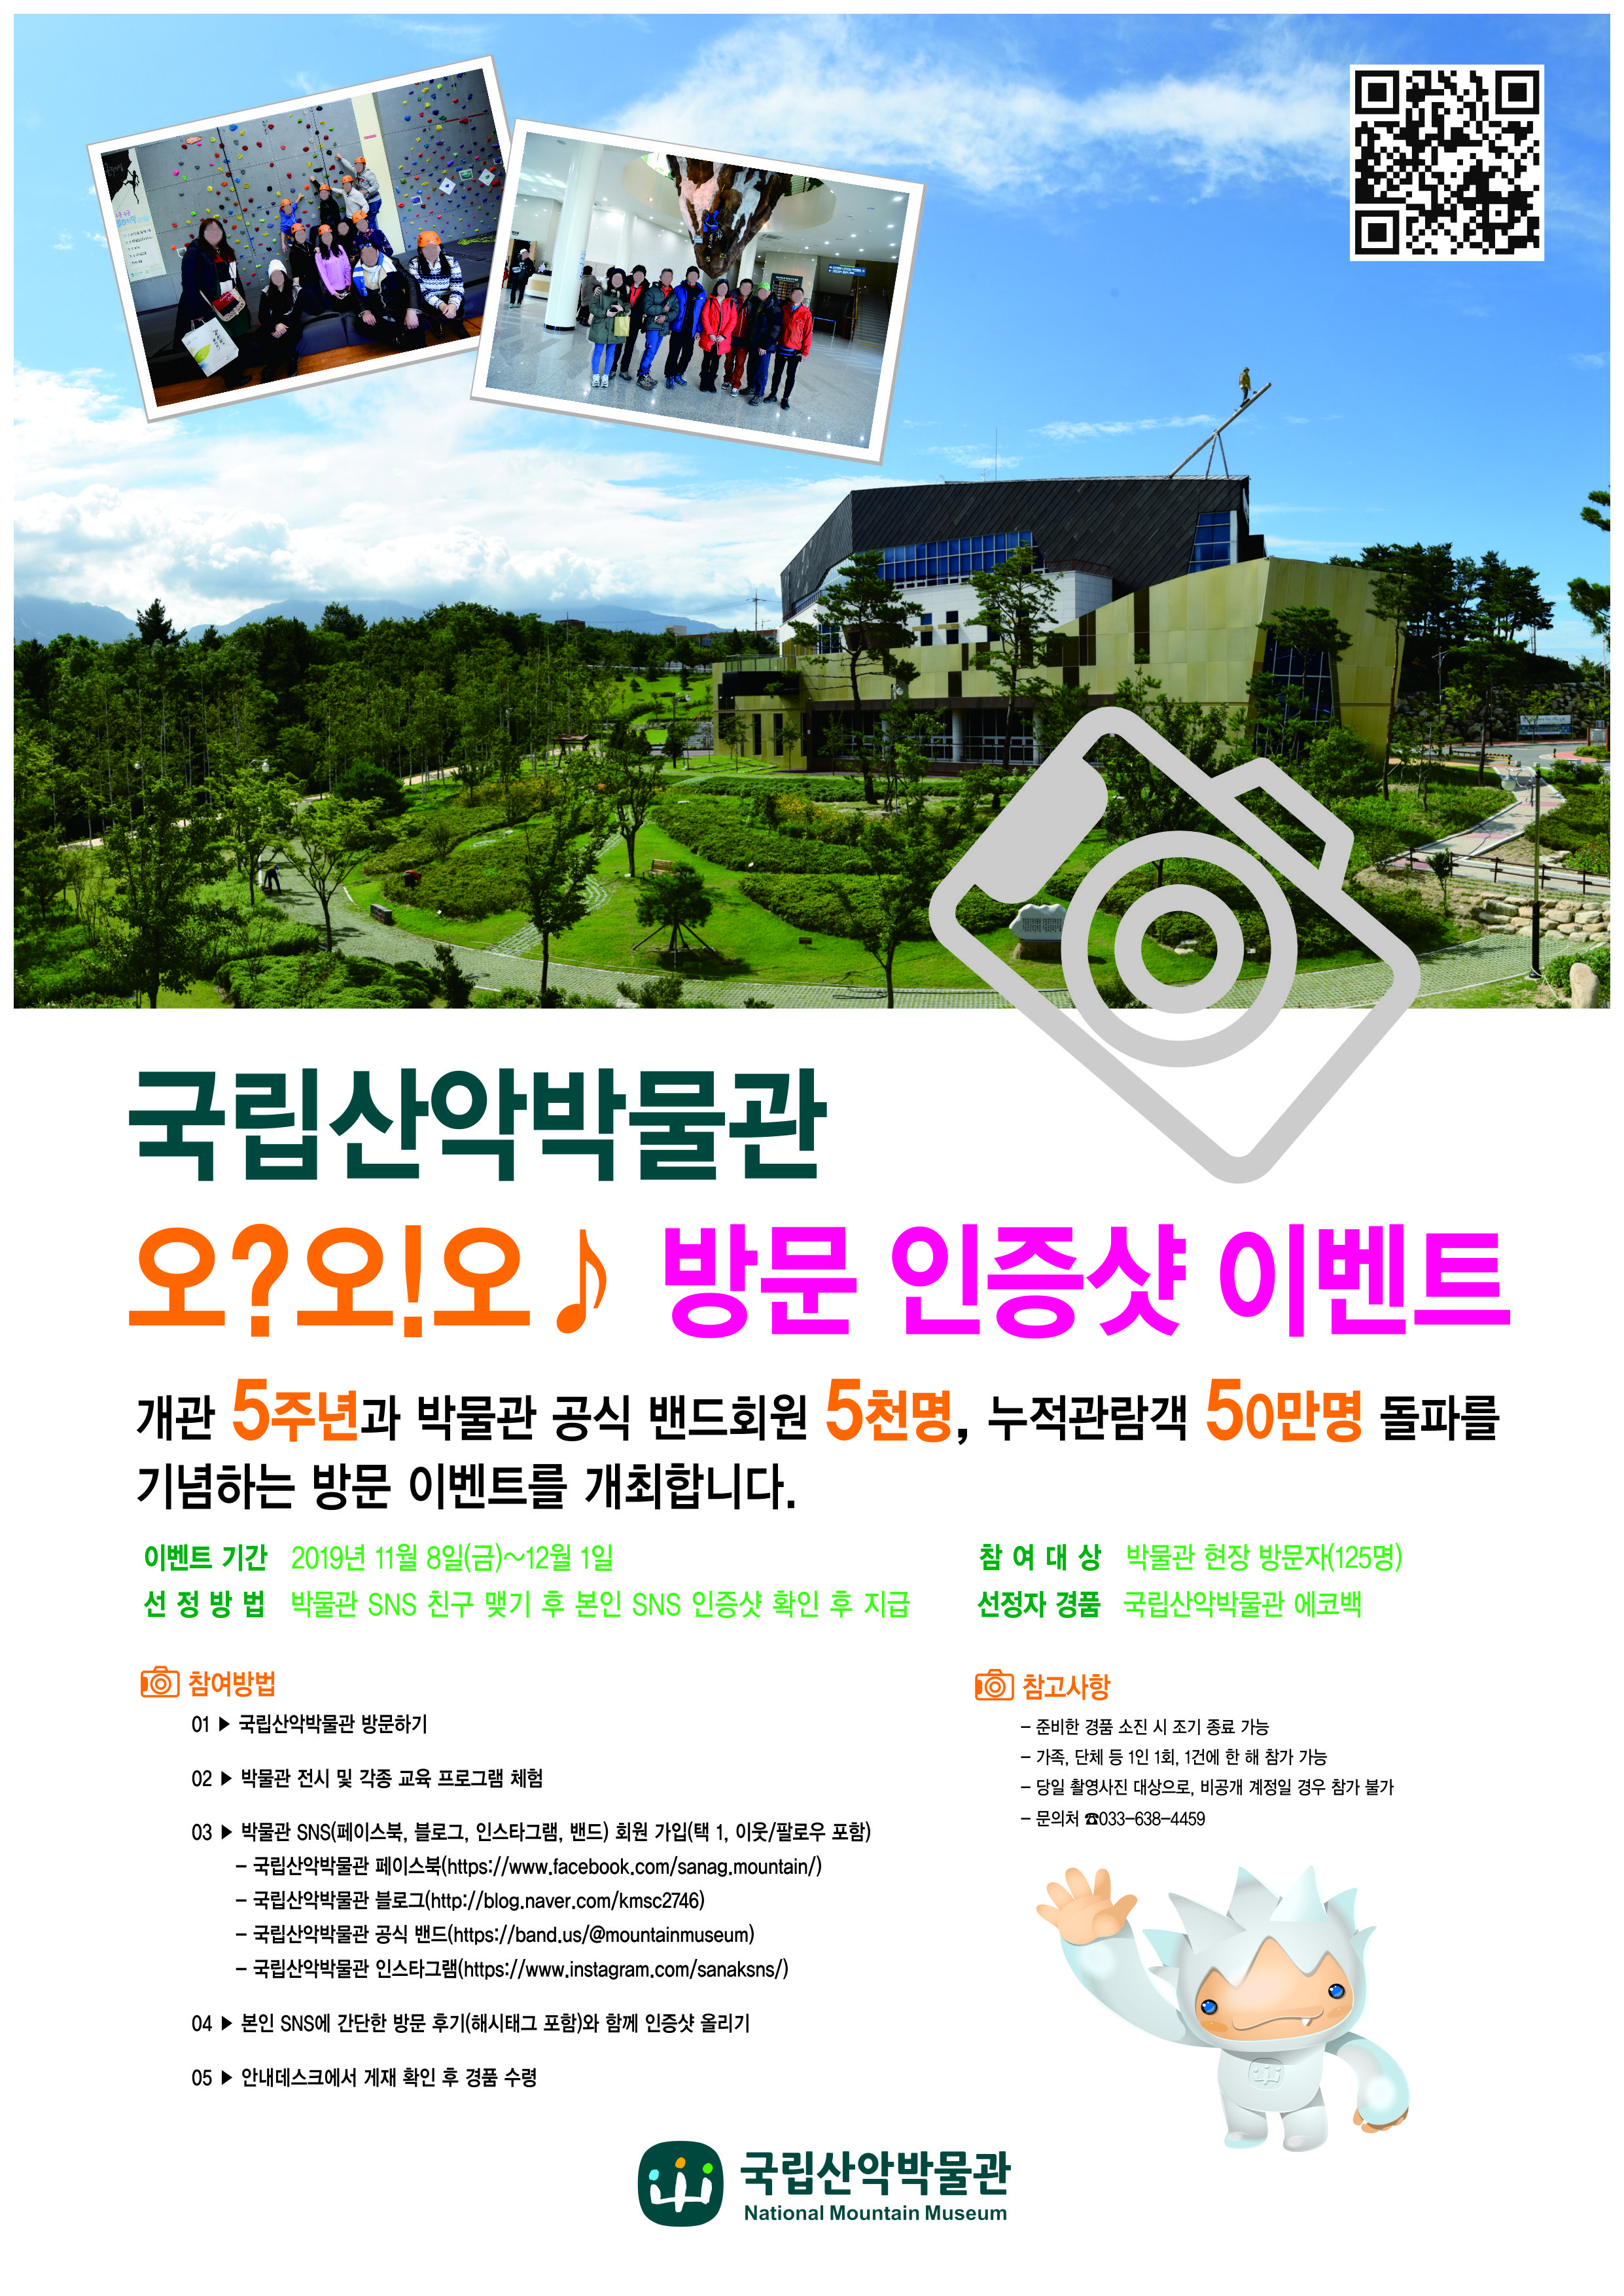 박물관 방문 인증샷 이벤트 개최(11.8~12.1)